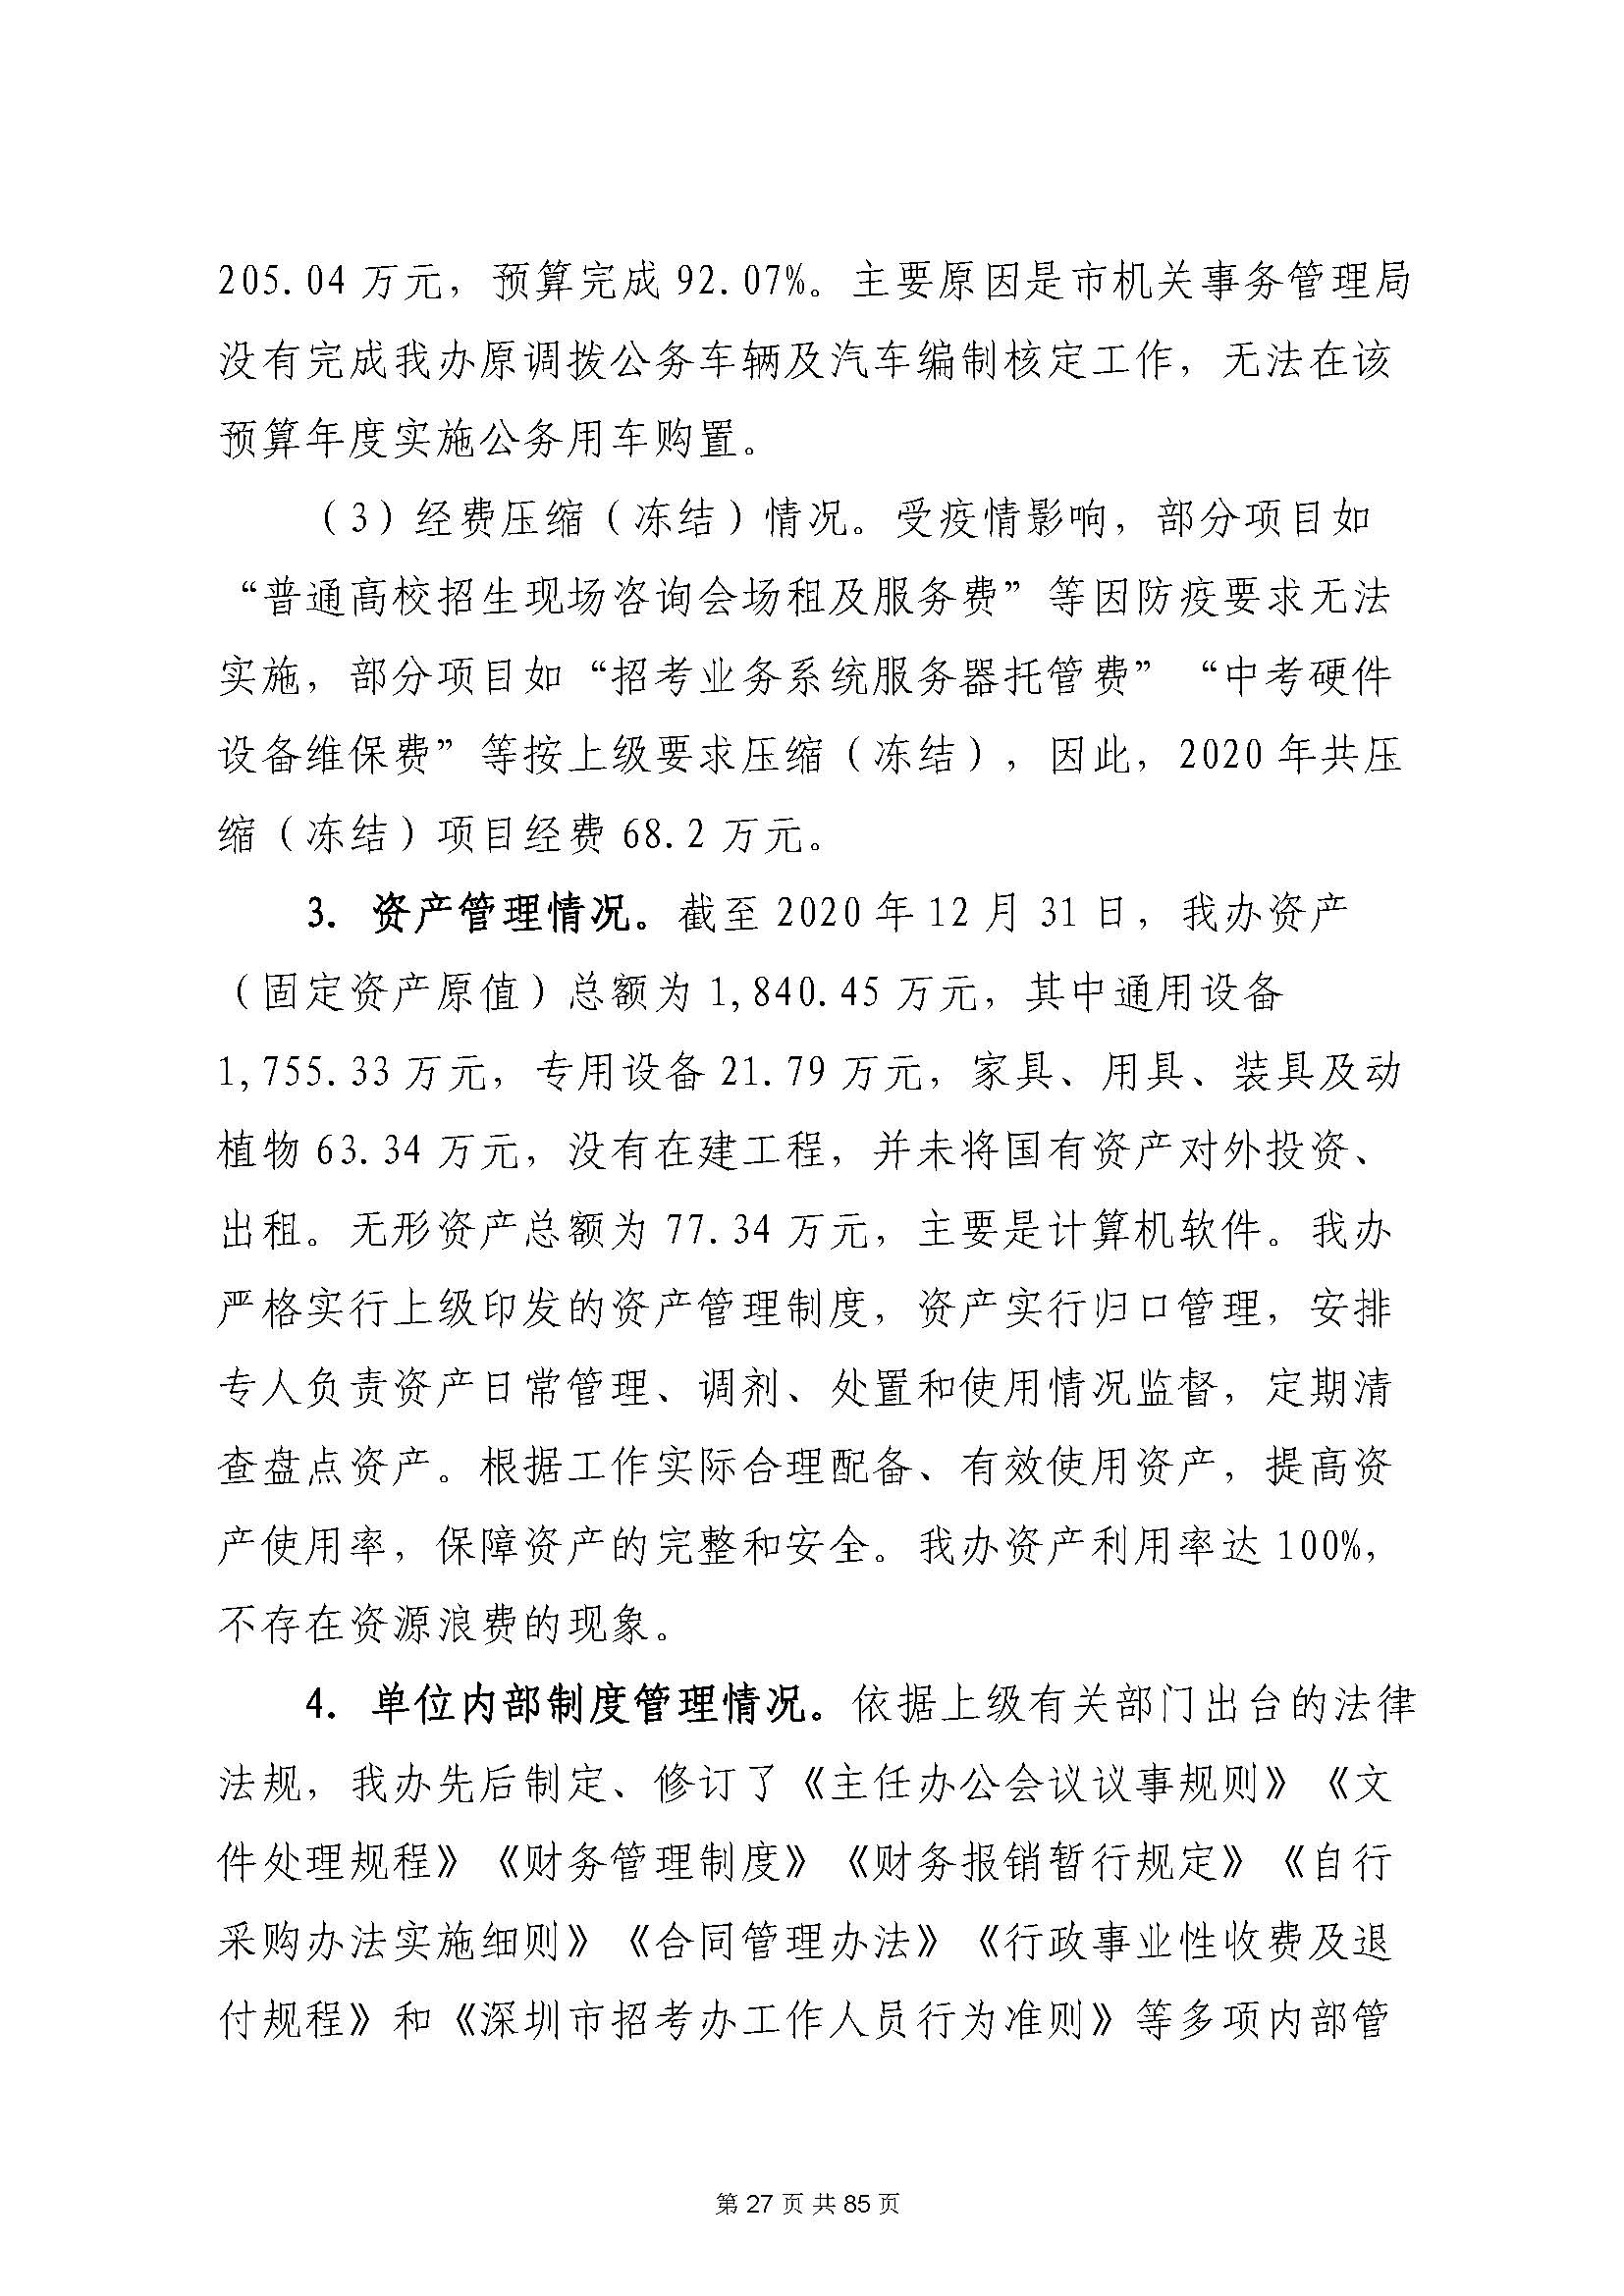 深圳市招生考试办公室2020年度部门决算_页面_28.jpg